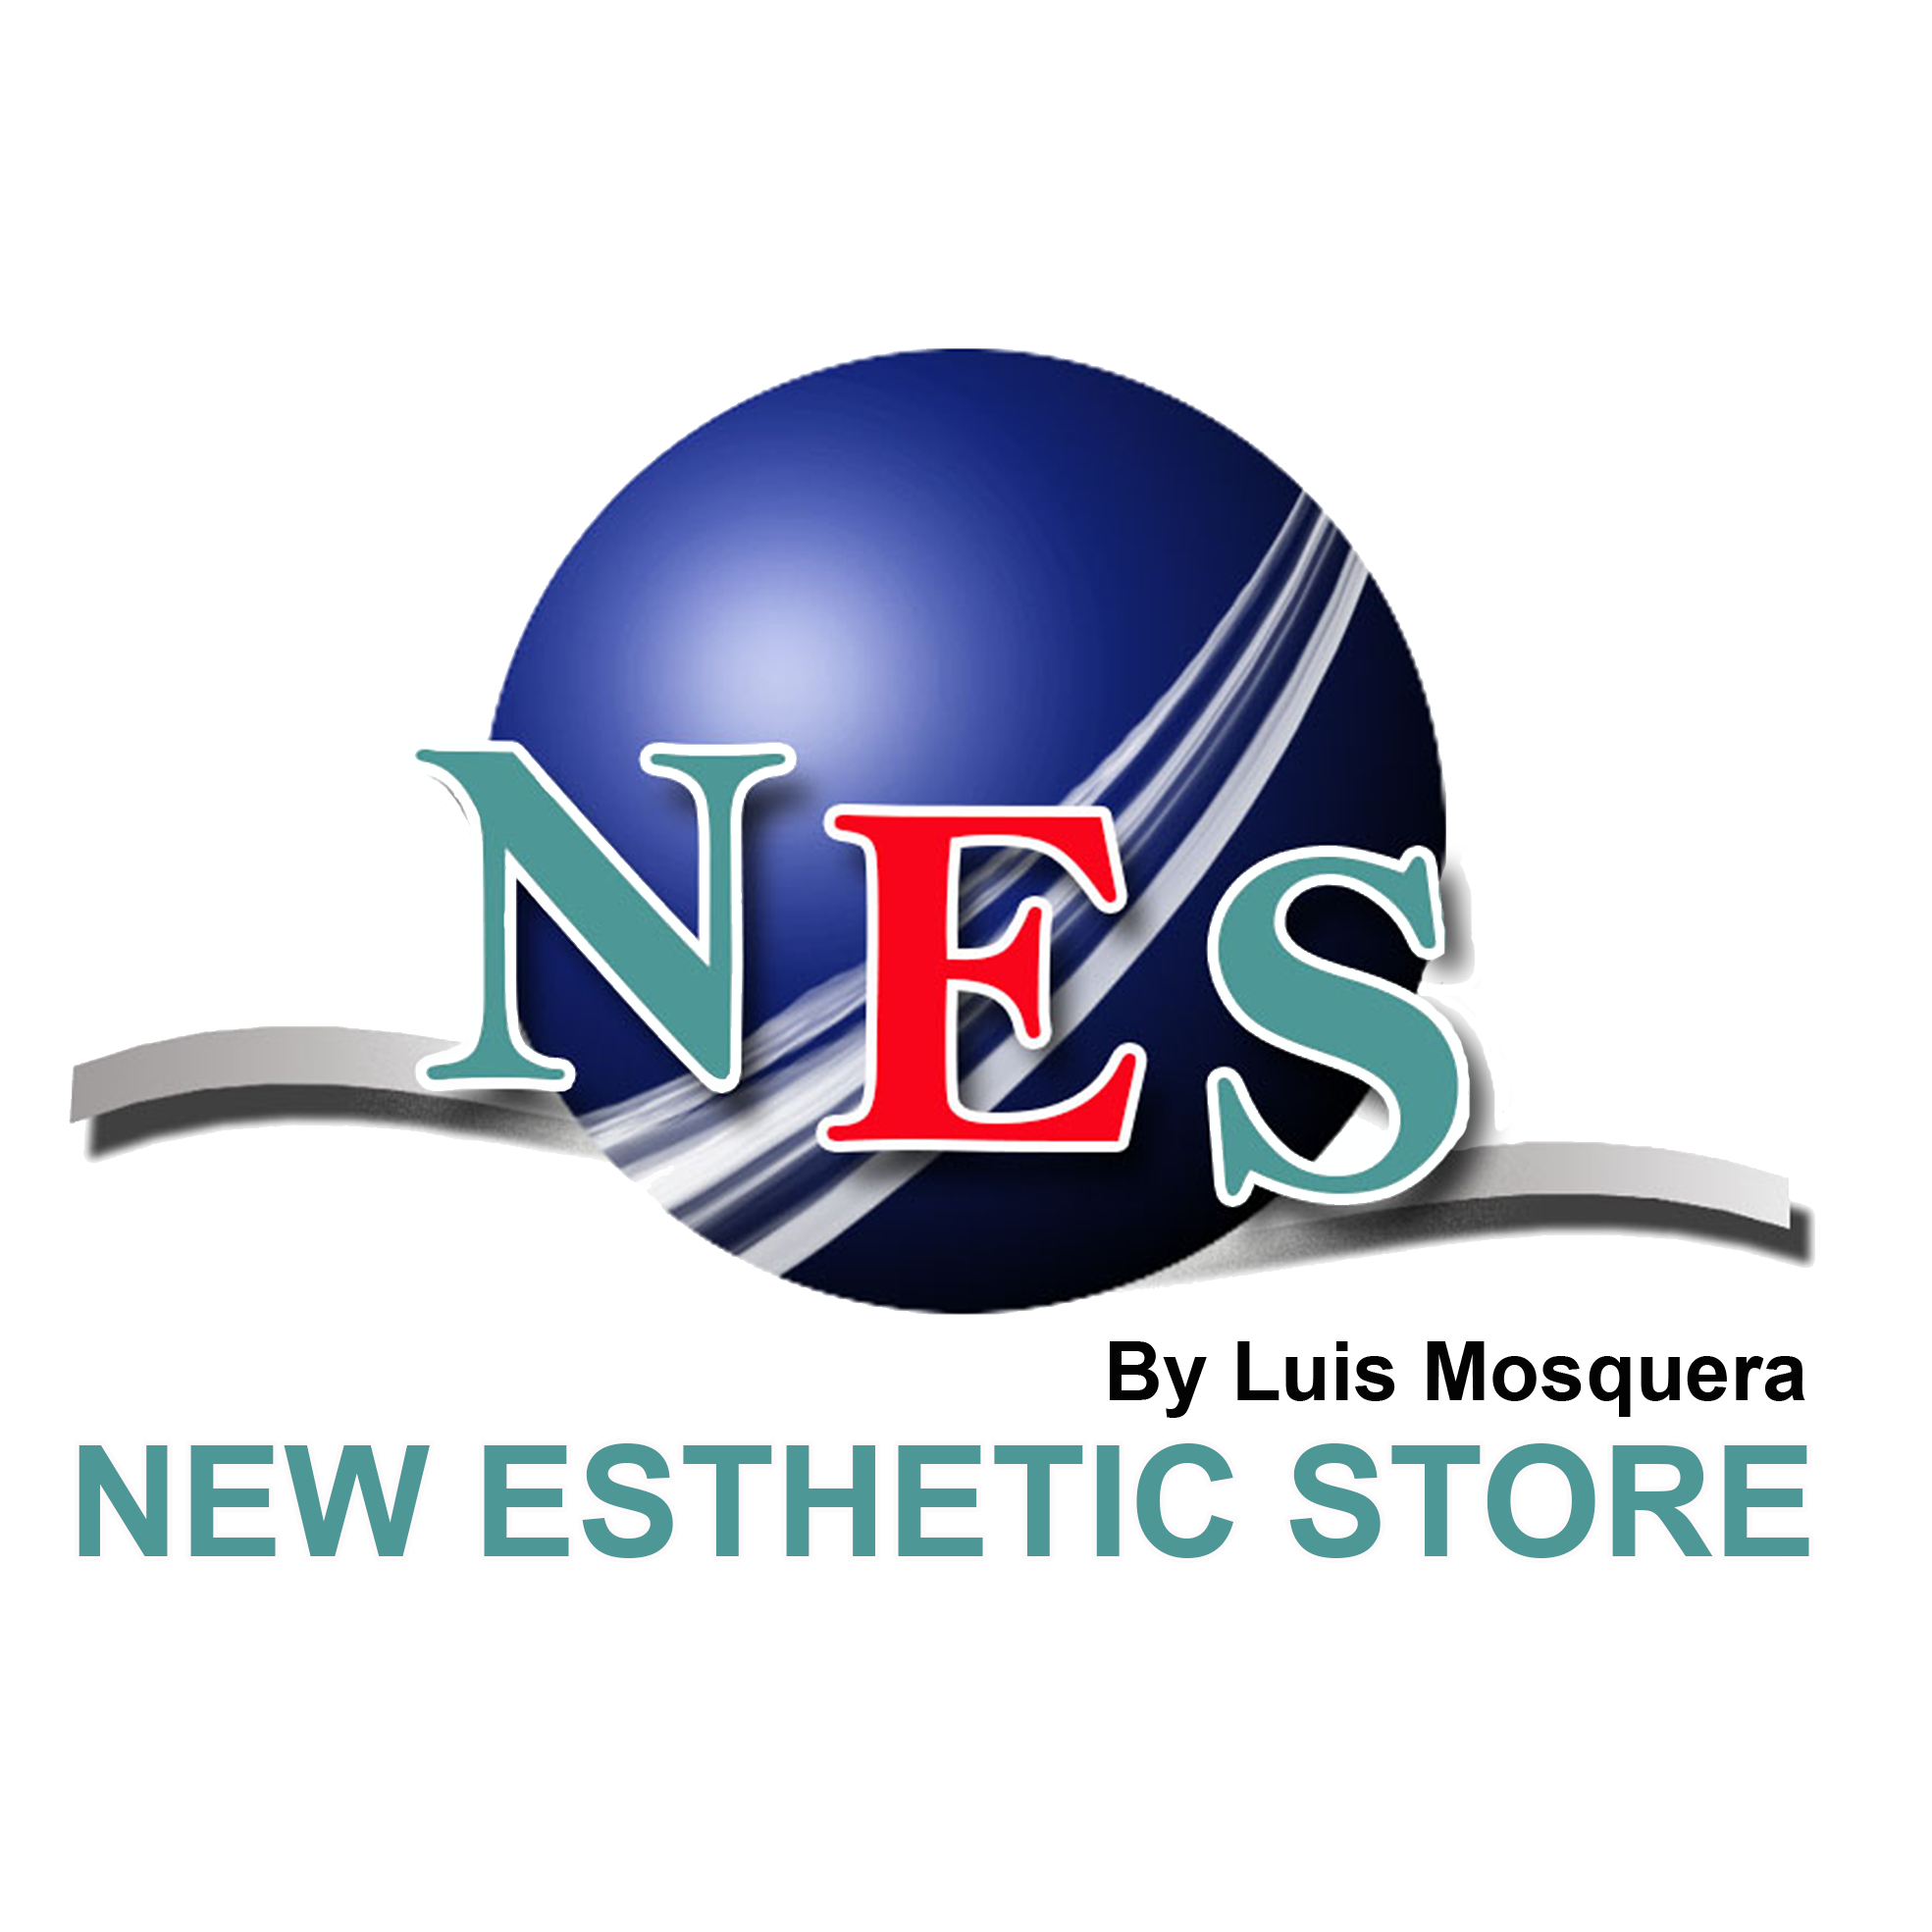 NES New Esthetic Store